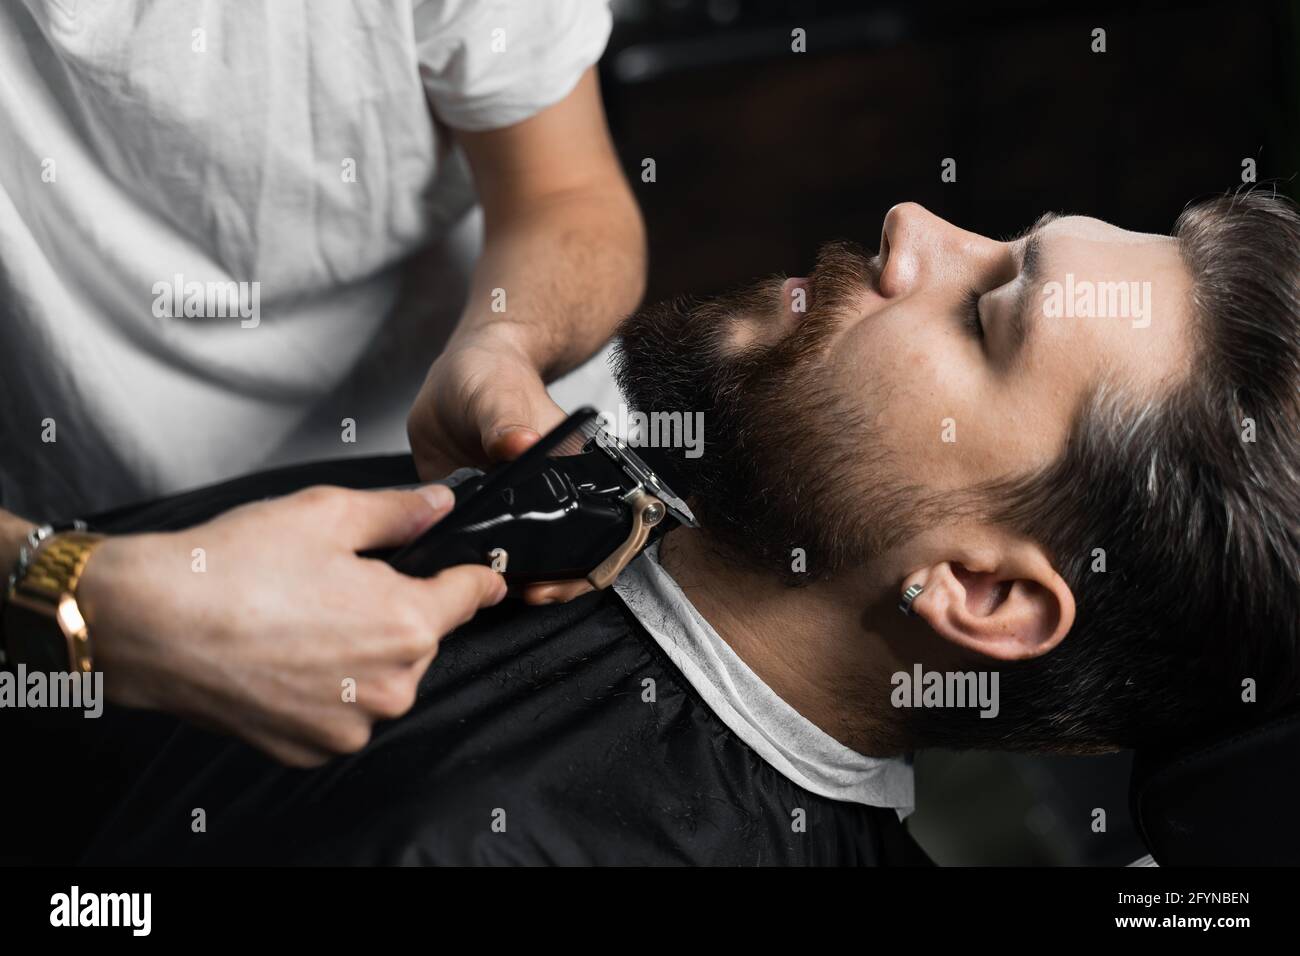 Máquinas de afeitado y recorte de barba